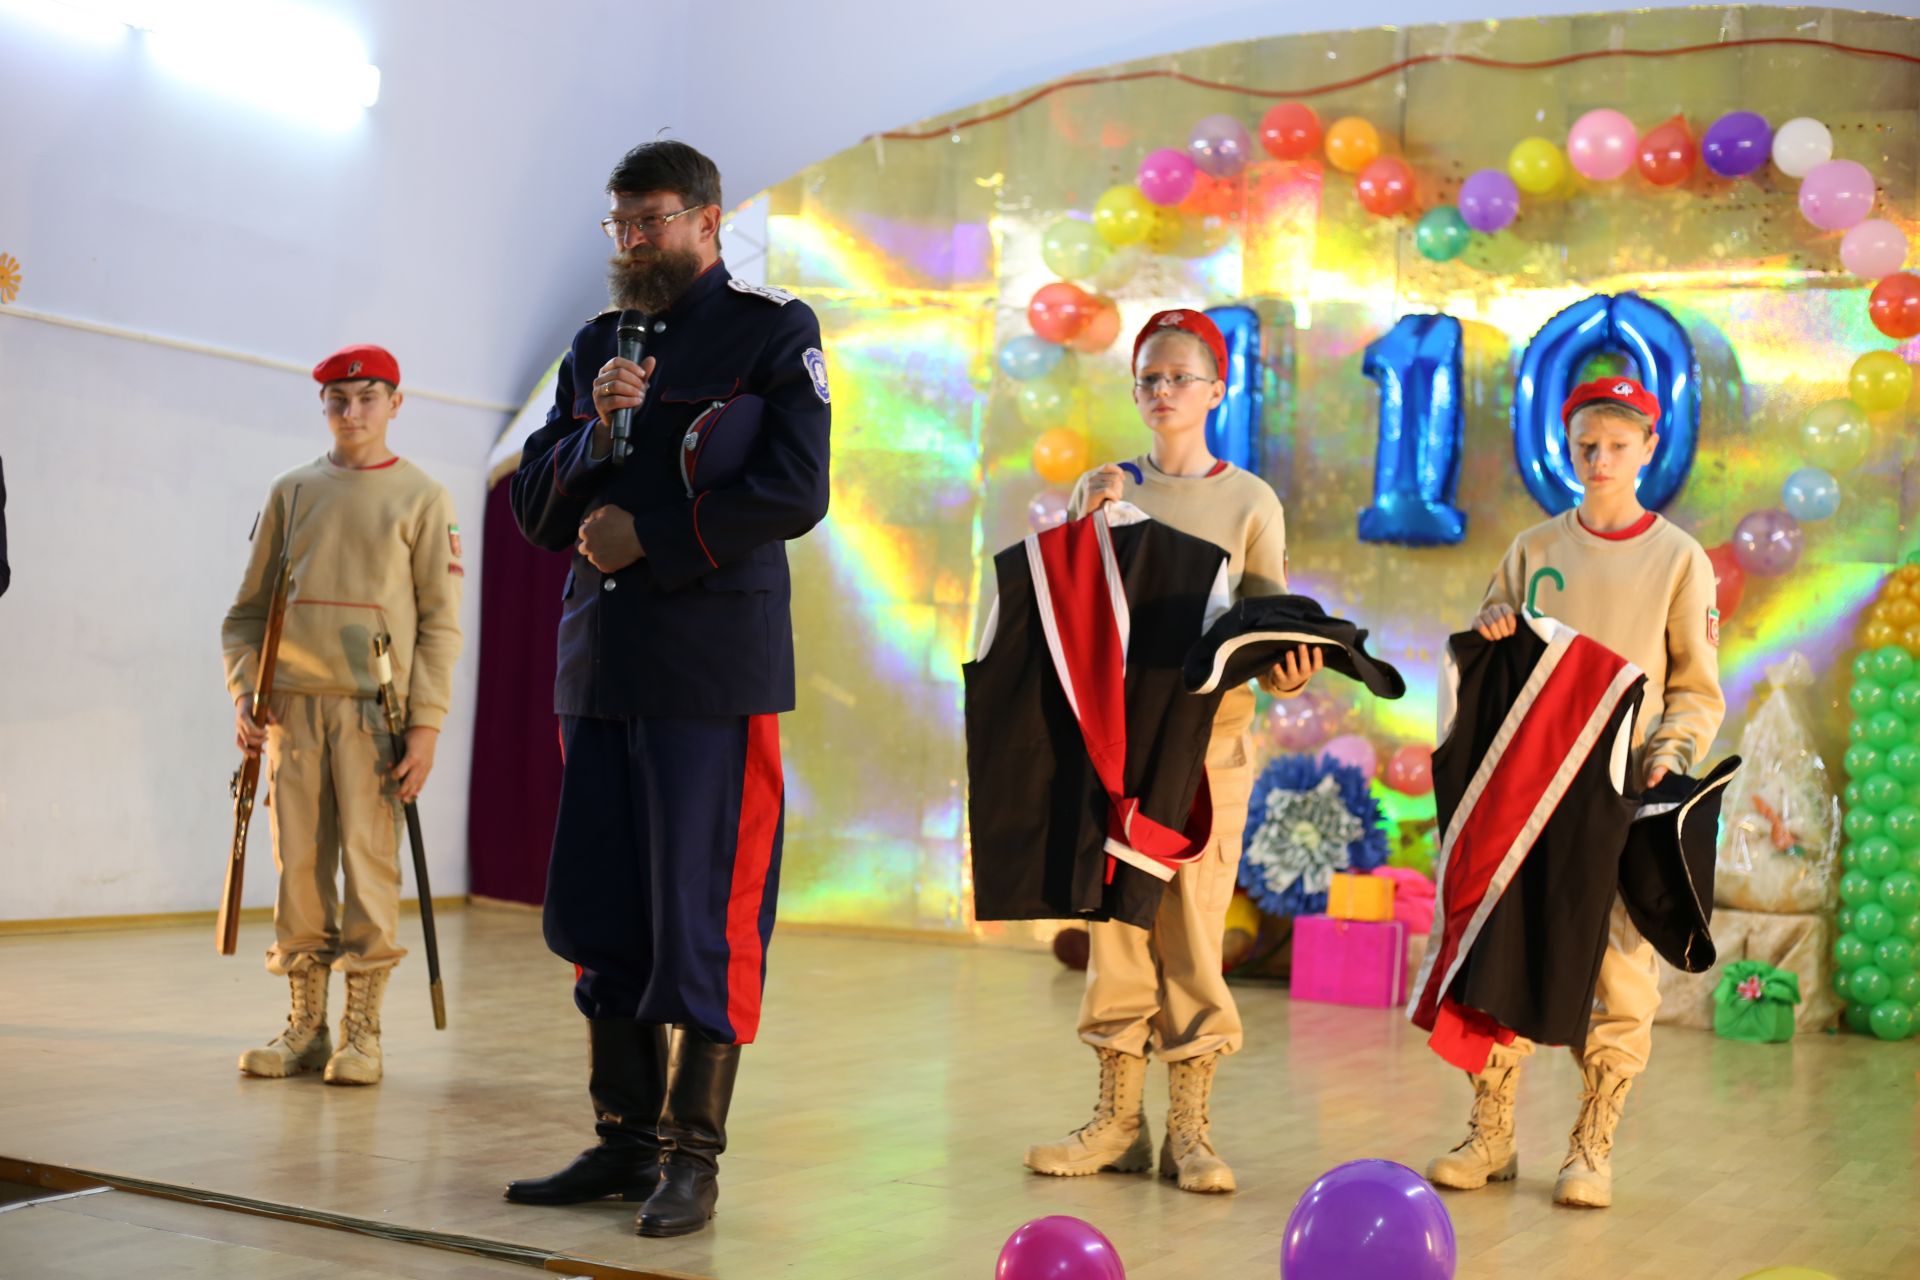 Подробный фоторепортаж празднования 110-летия Билярской школы